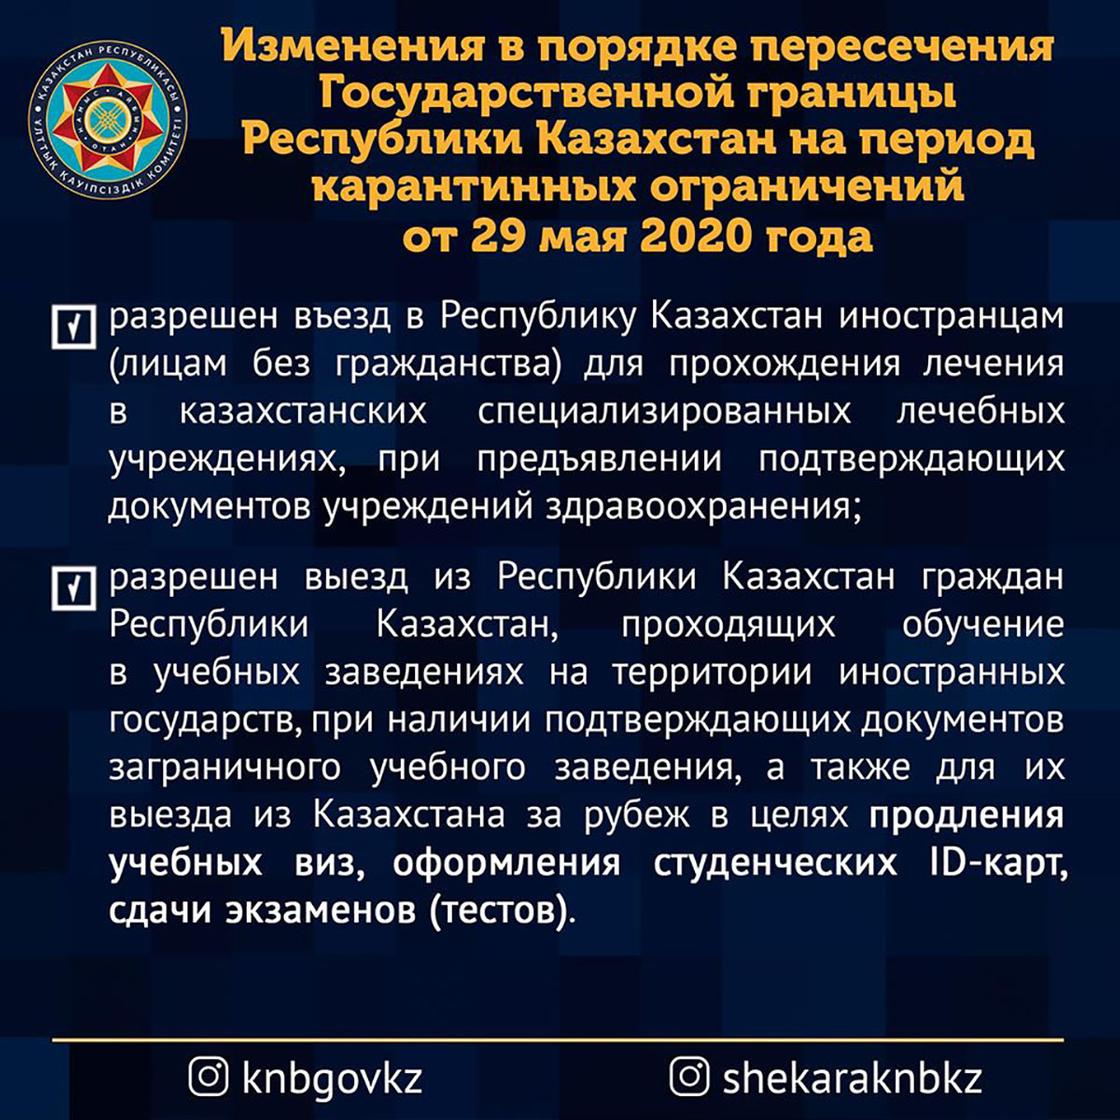 Правила пересечения госграницы Казахстана были изменены